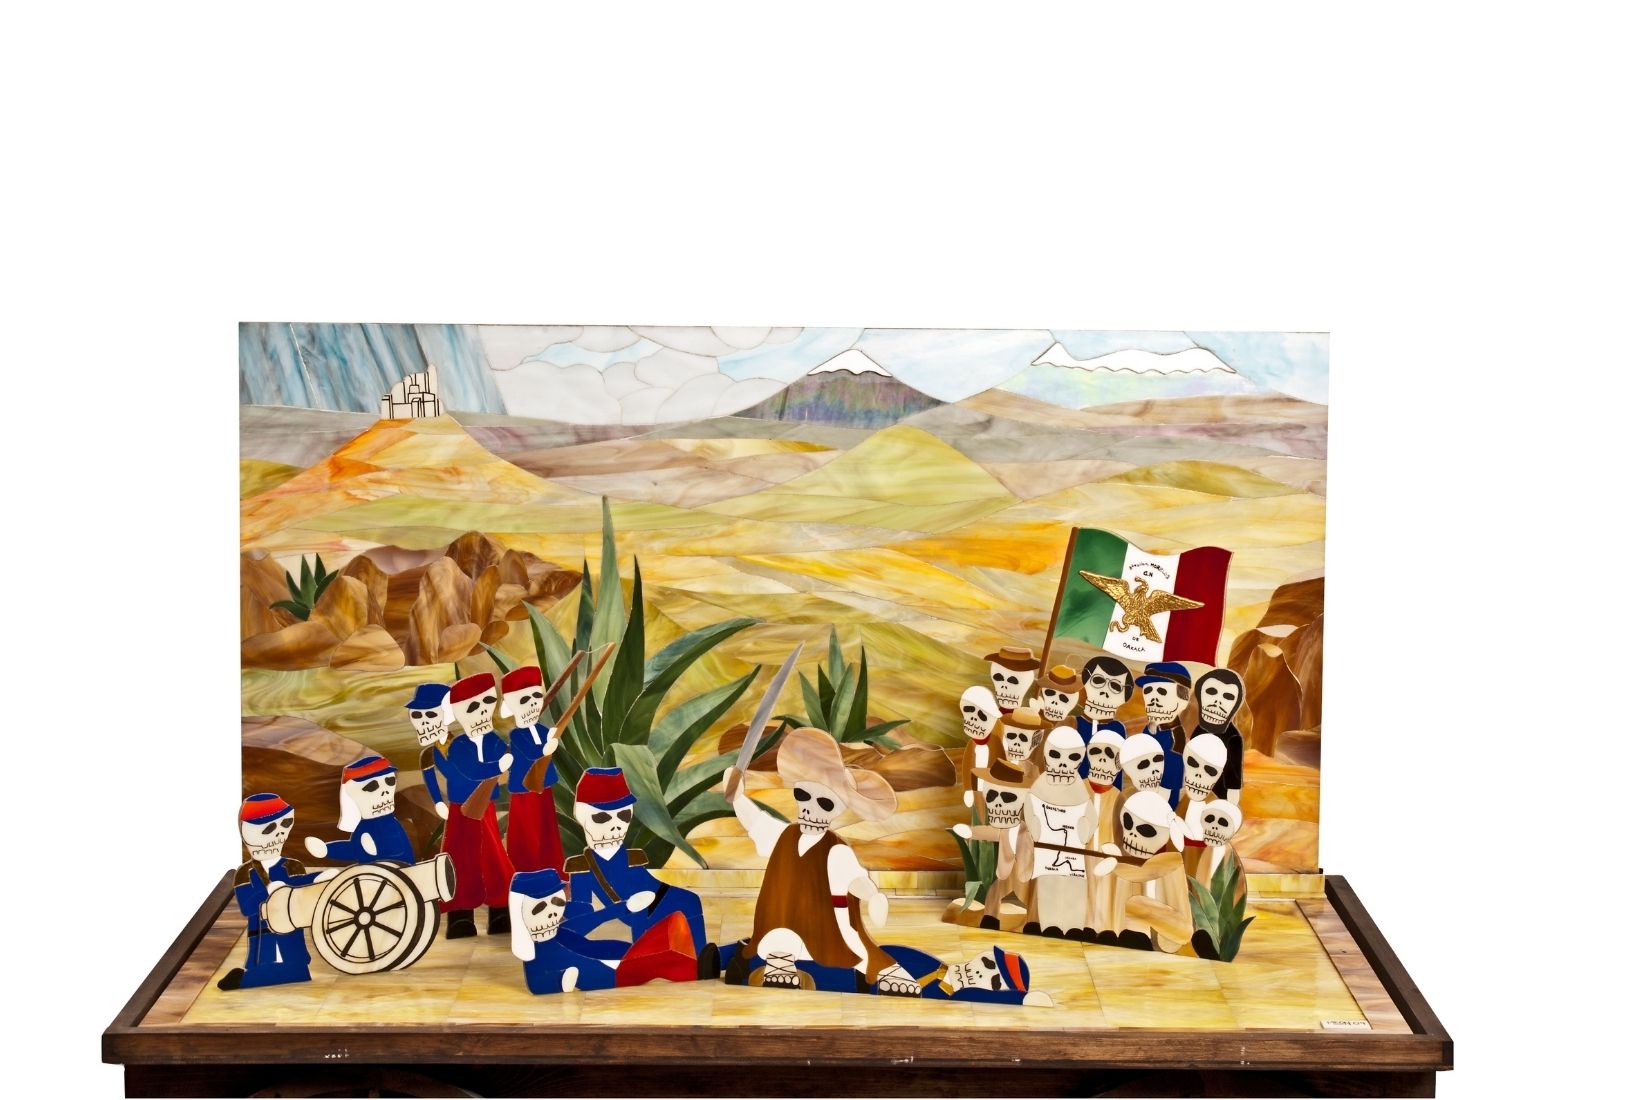 Batalla de Puebla. 5 de mayo de 1862. Vidrio recortado. Artesanos Miguel León y Citlali Yáñez. CDMX. Col. MAP. (Foto: Carlos Contreras de Oteyza).